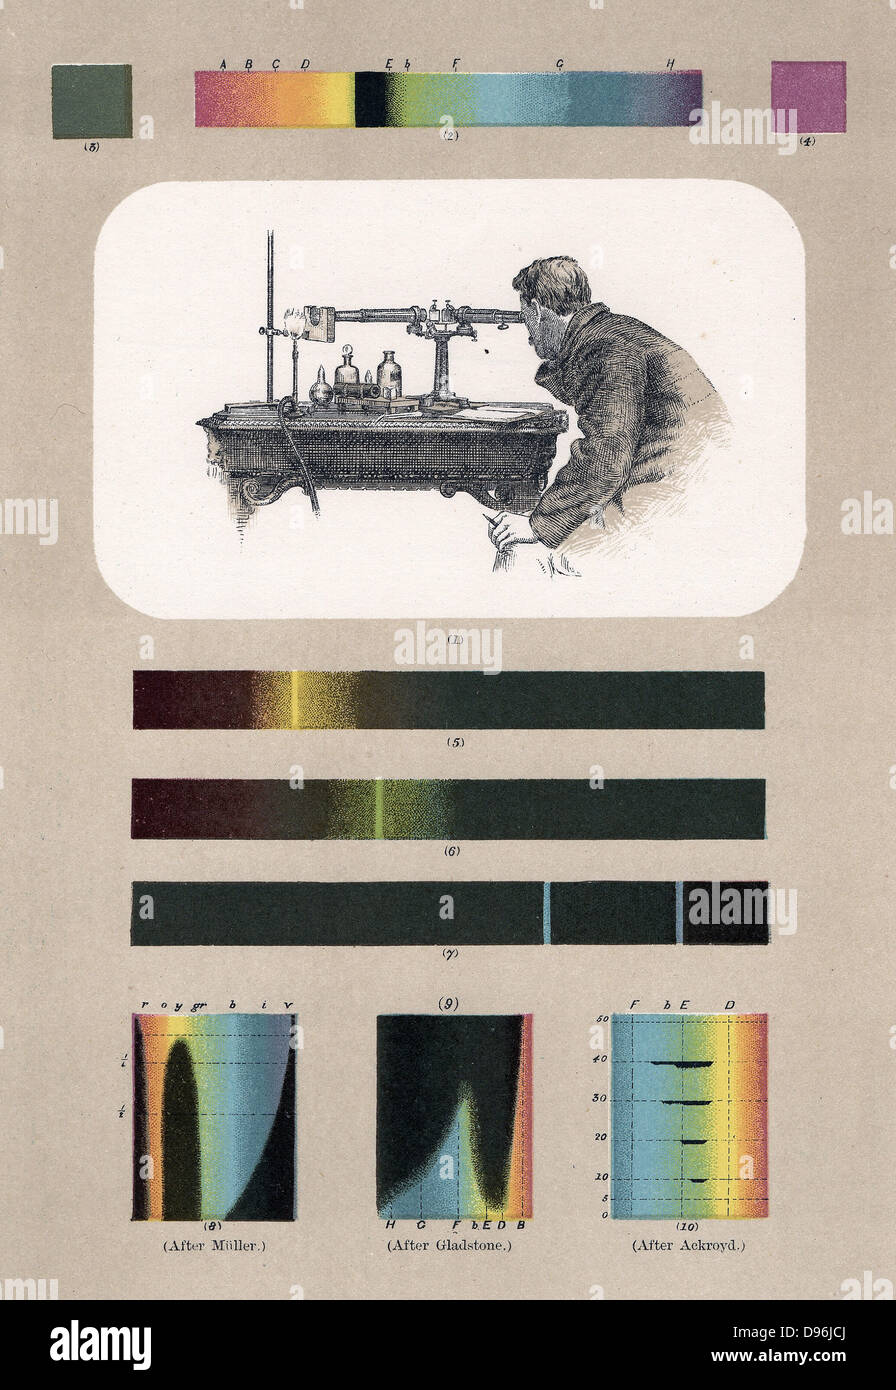 Spectroscopist (oben) zu beobachten. Unten, von links nach rechts, Absorptionsspektren von Indigo, Chromsäure Chlorid und Magenta. Lithographie. Stockfoto